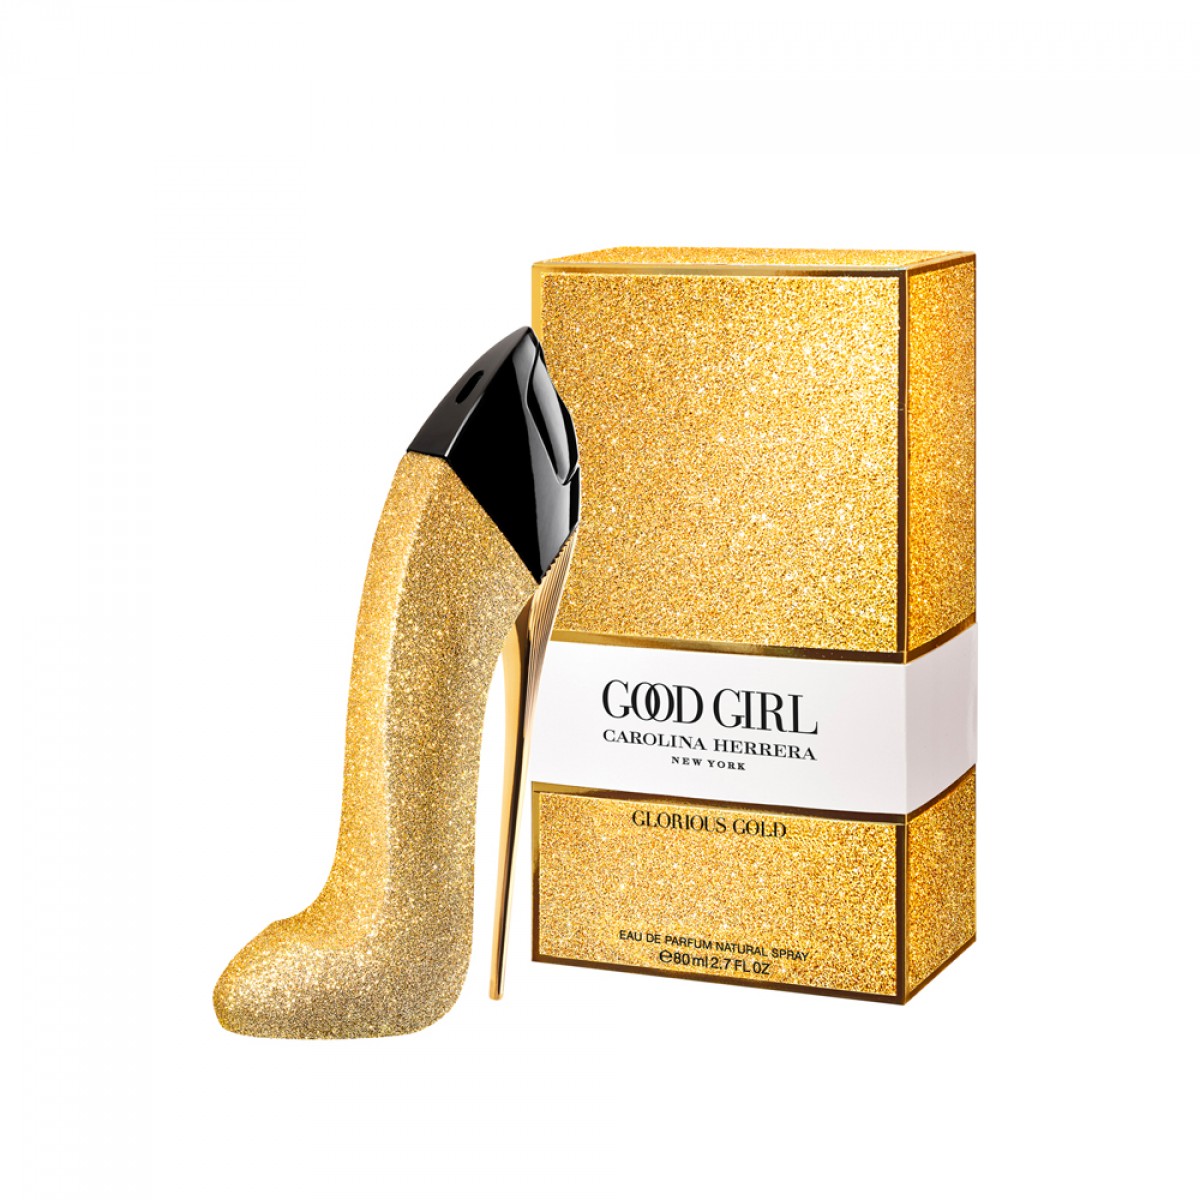 ادو پرفیوم زنانه کارولینا هررا مدل Good Girl Glorious Gold Collector حجم 80 میلی لیتر